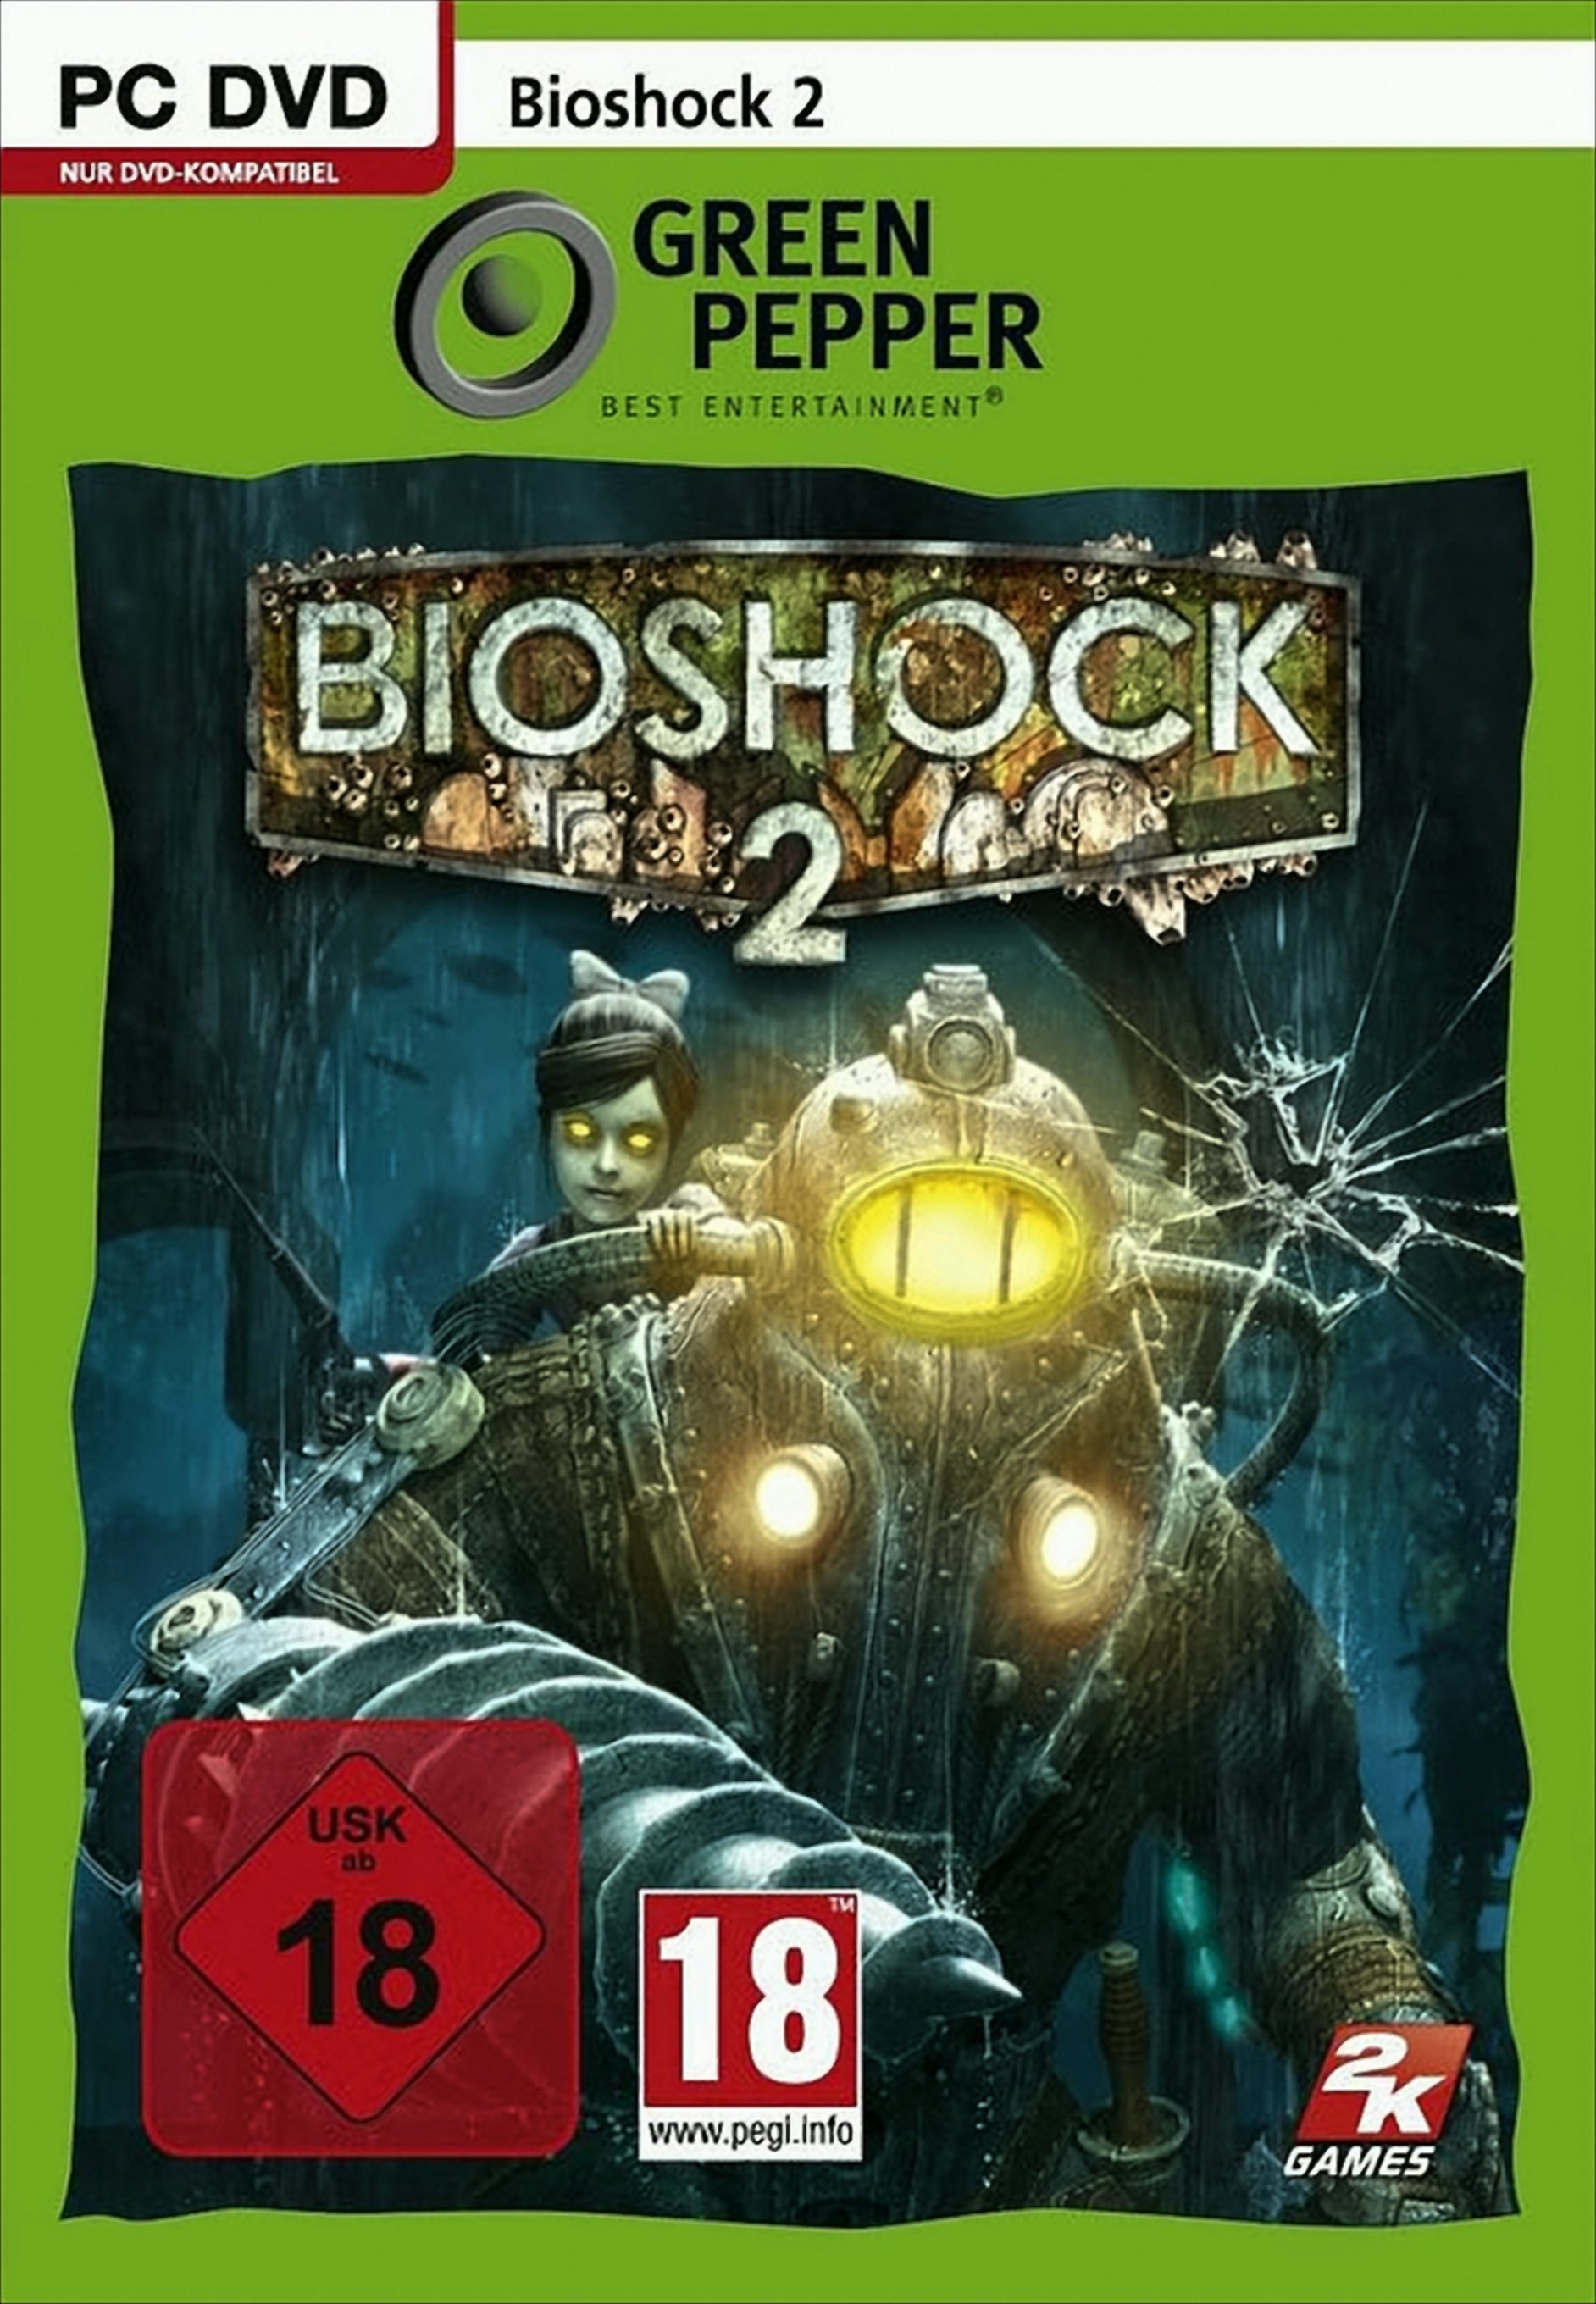 BioShock 2 von Take2